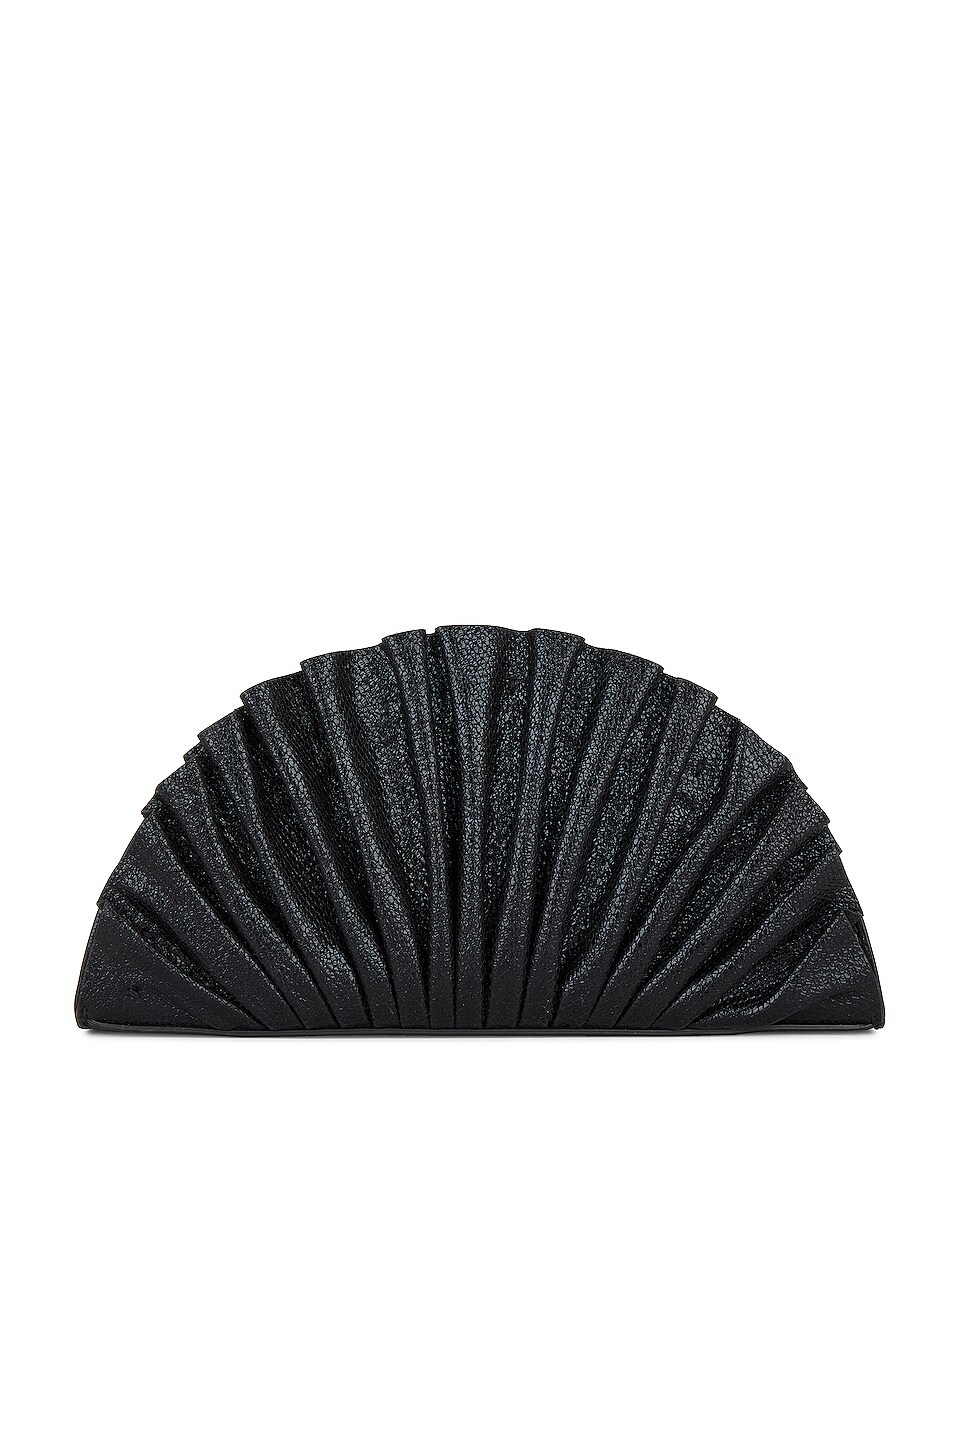 Nala Mini Clutch in Black. Revolve Women Accessories Bags Clutches 